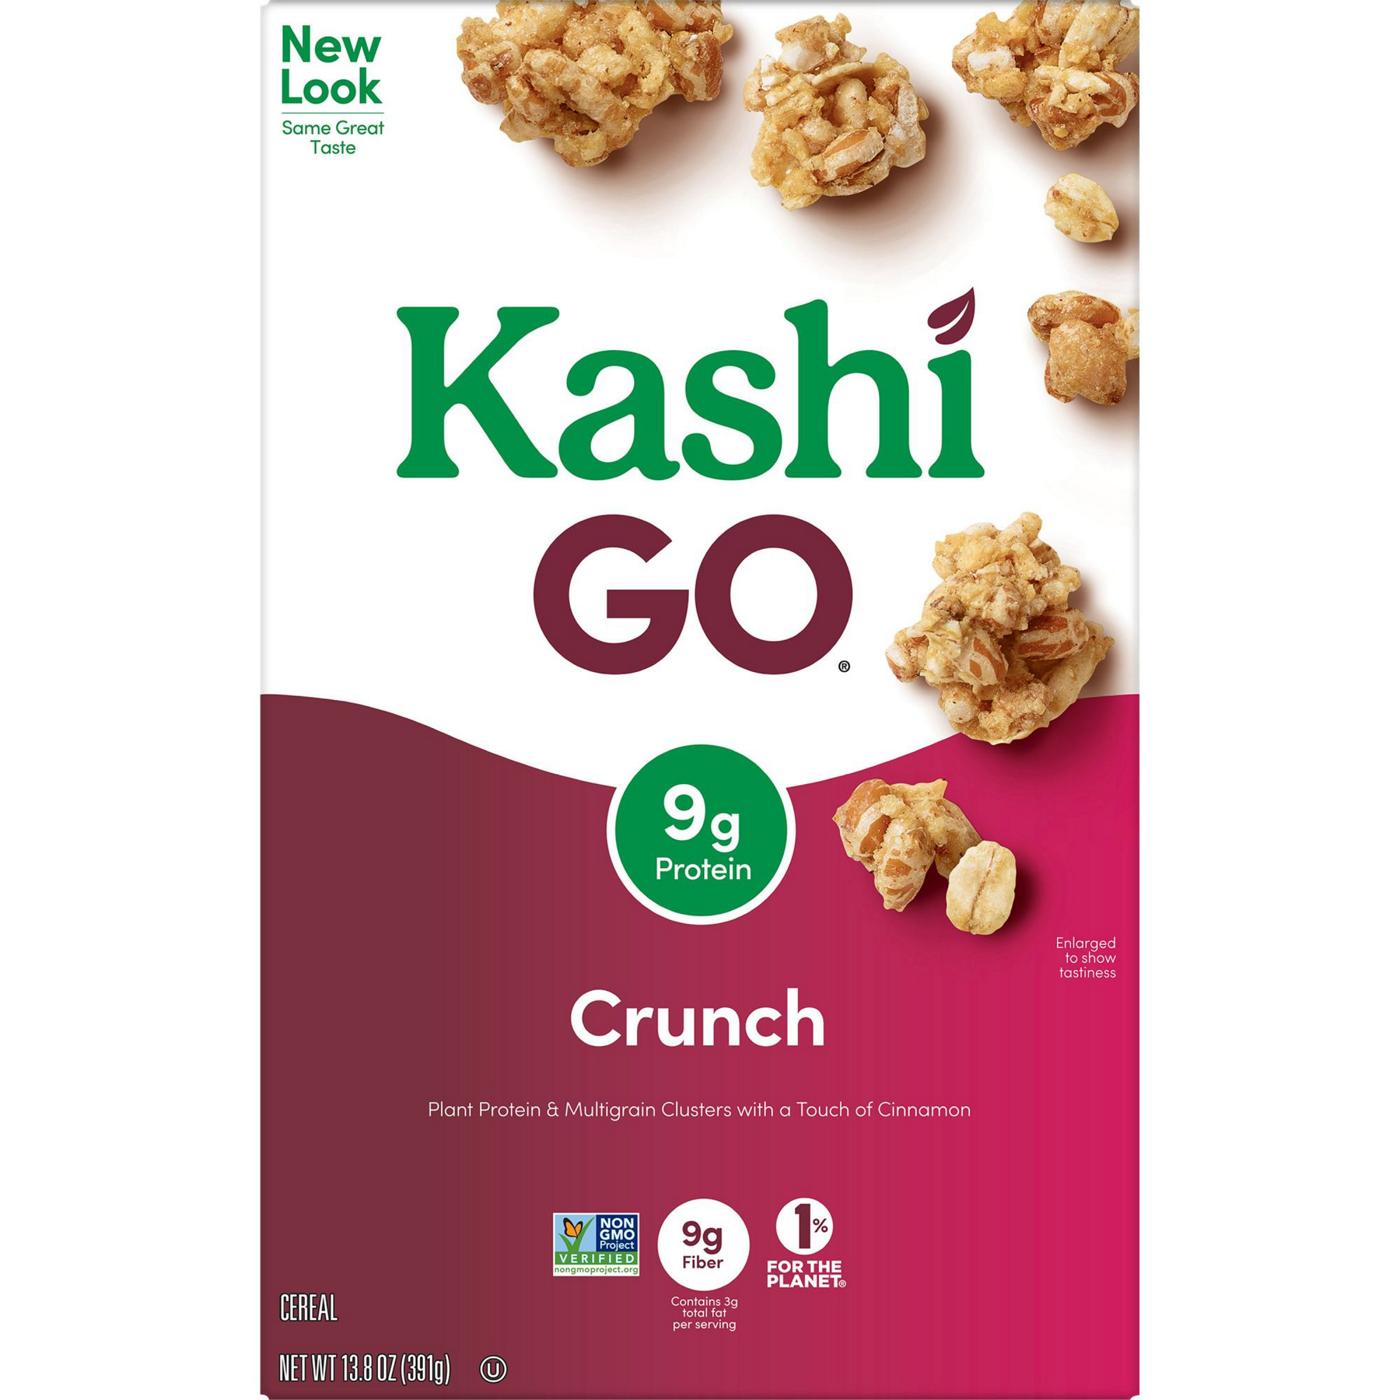 Kashi GO Crunch Breakfast Cereal; image 3 of 11